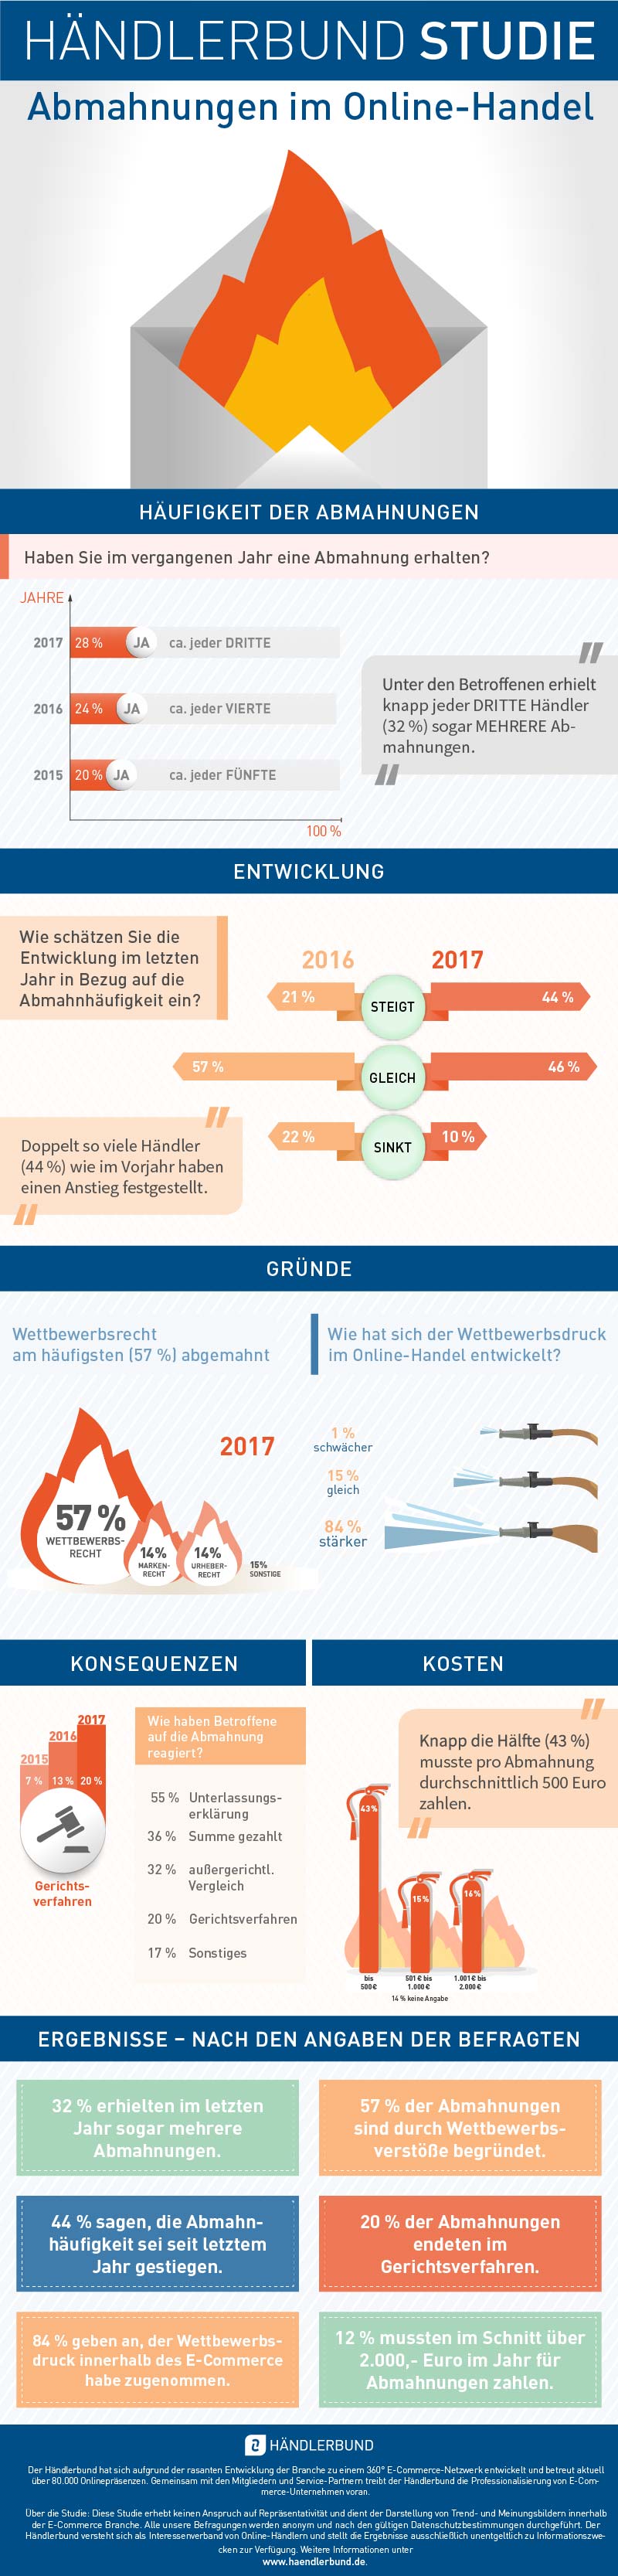 Abmahnstudie 2018 Infografik